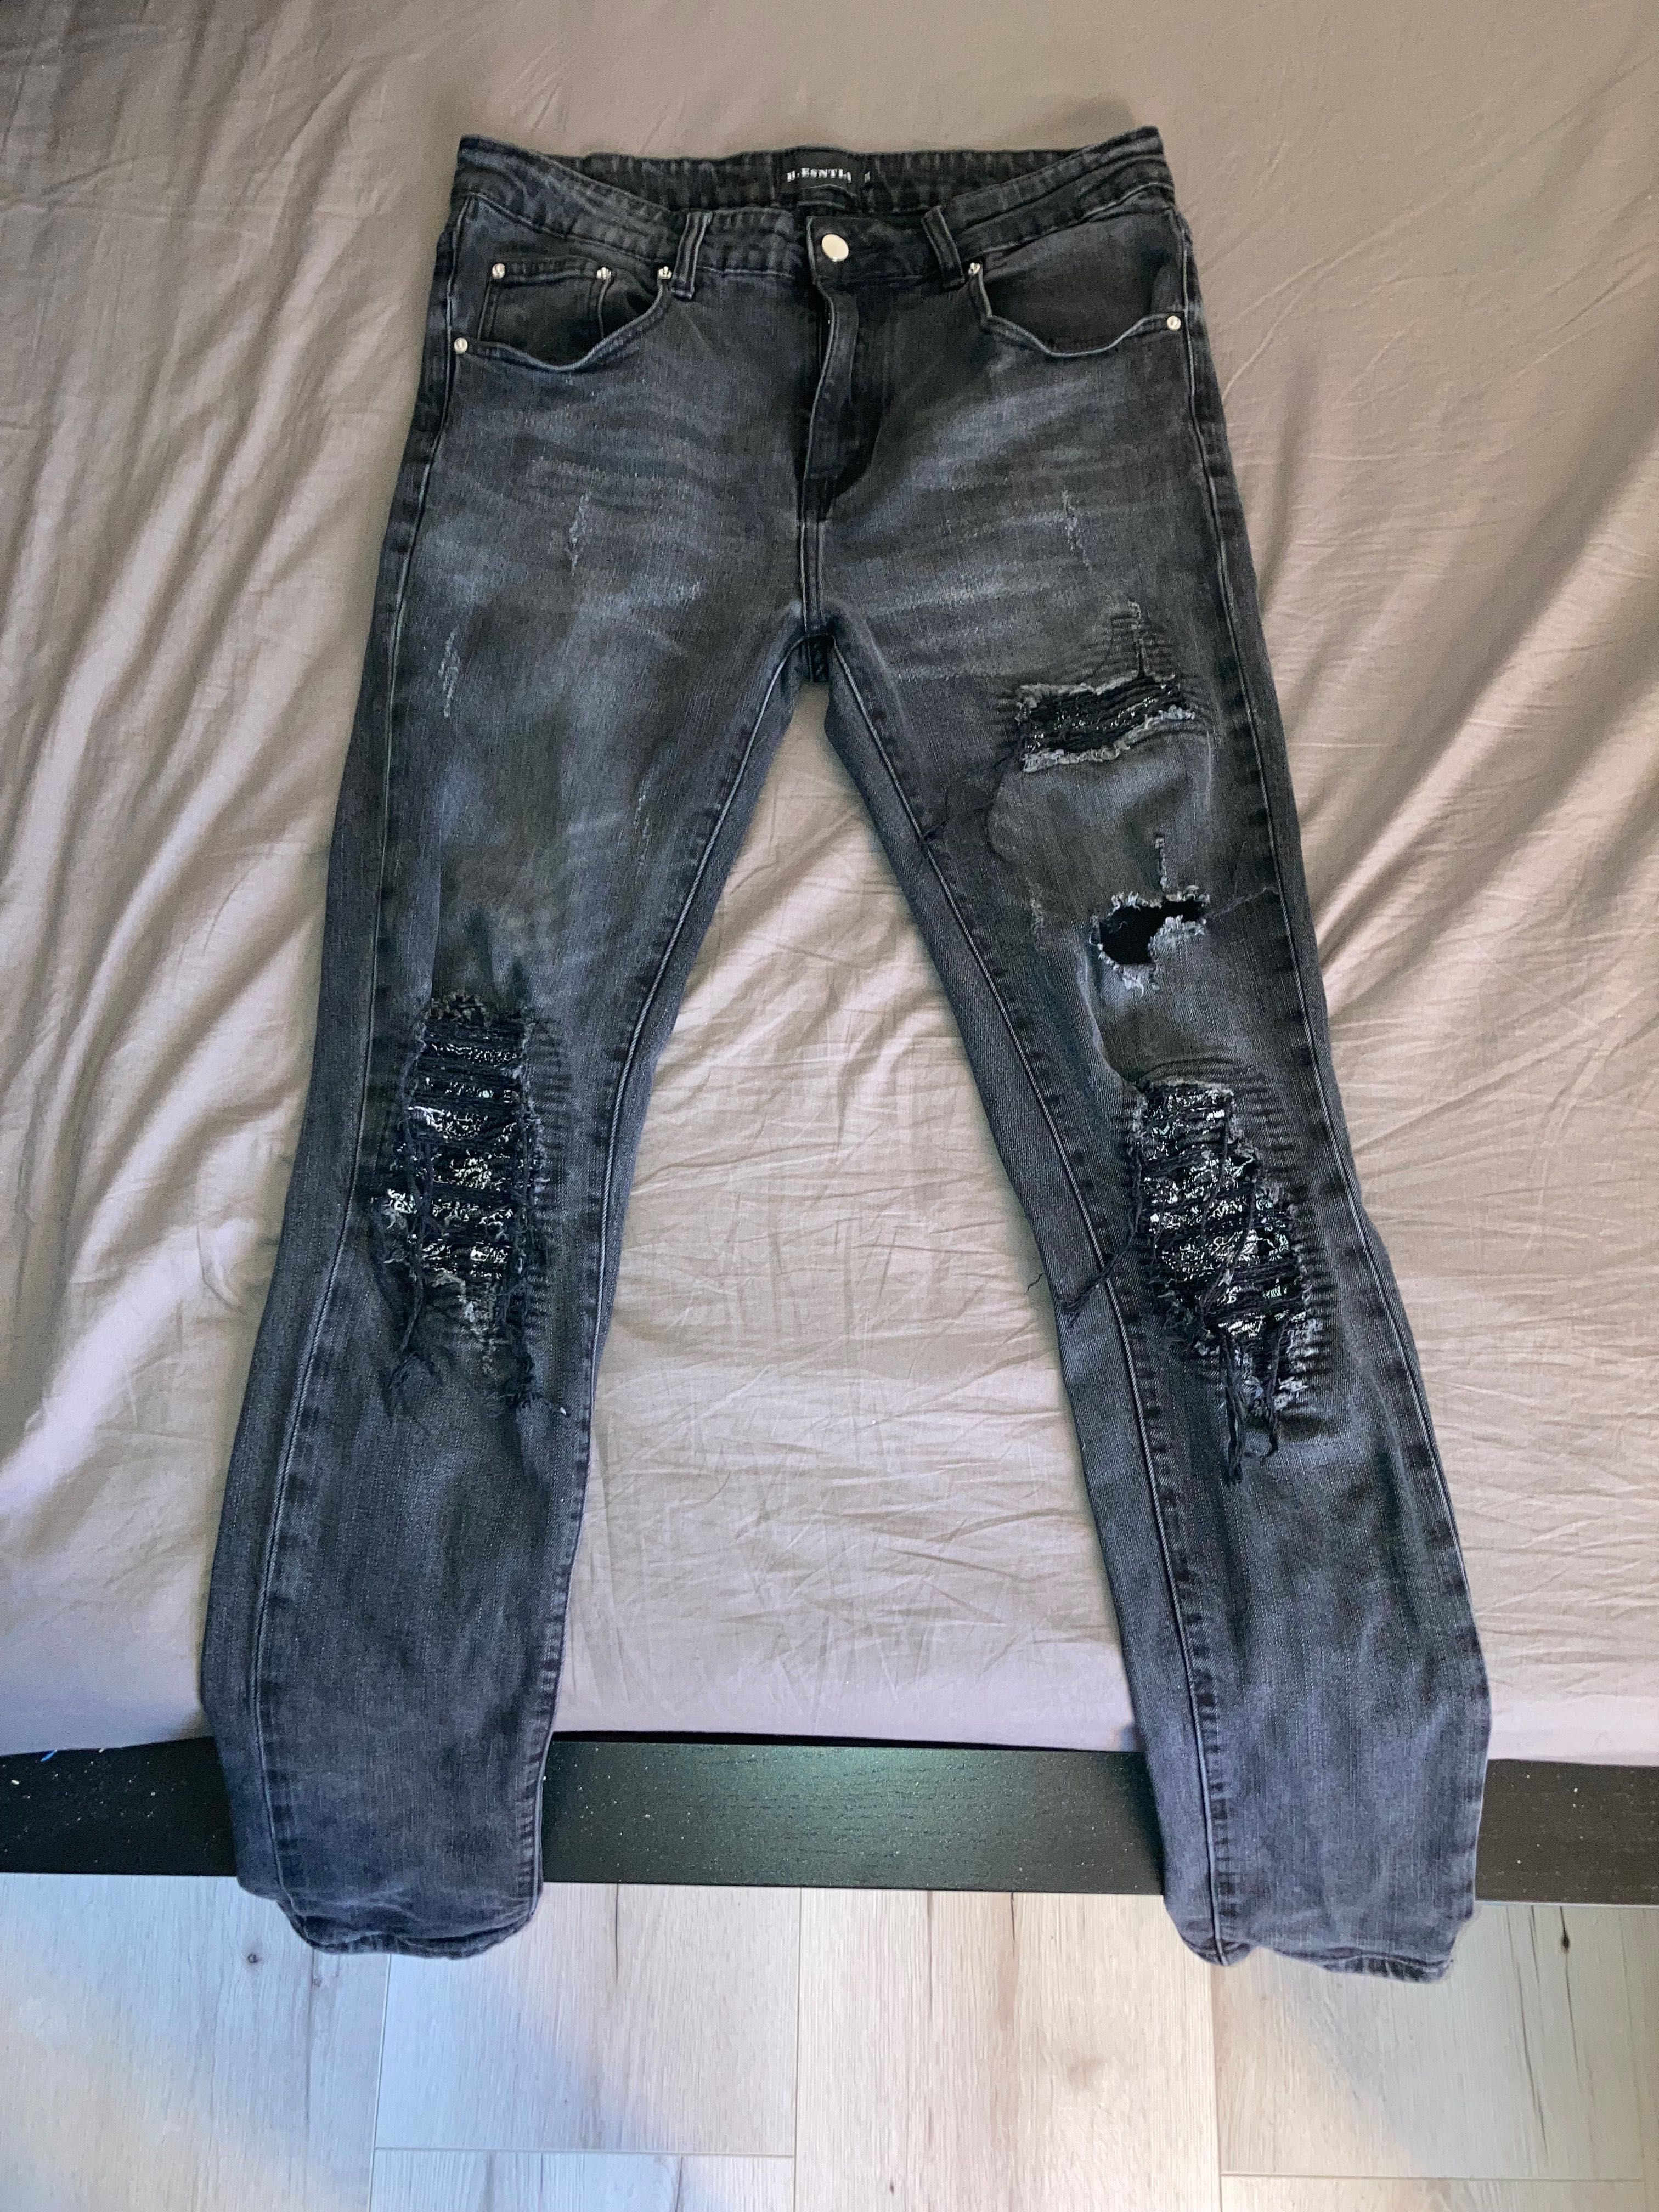 HESNTLS Jeans Size 34 (L)